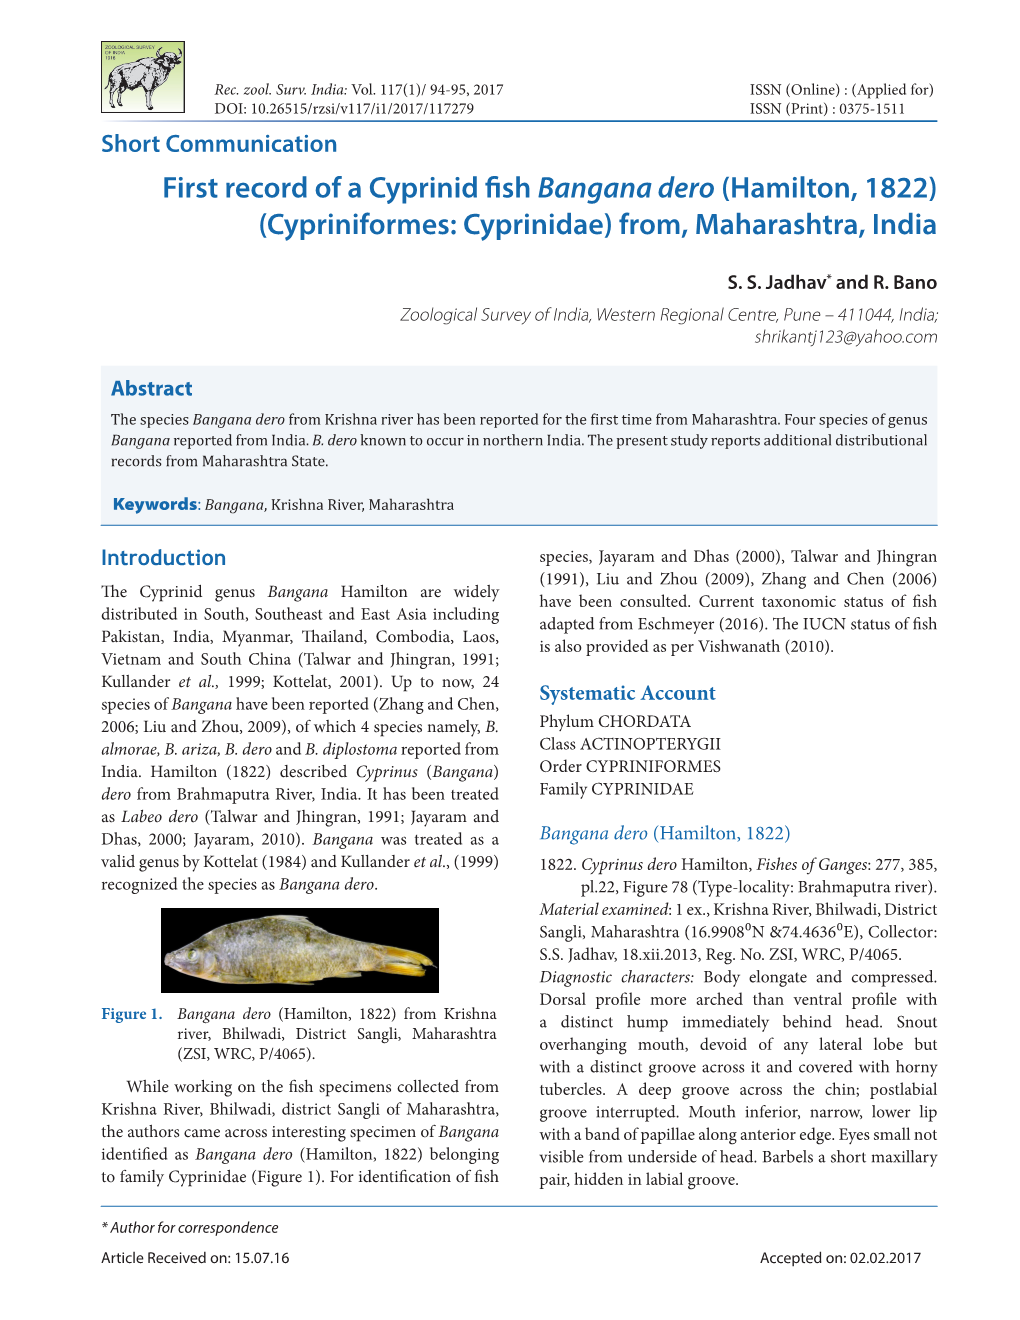 First Record of a Cyprinid Fish Bangana Dero (Hamilton, 1822